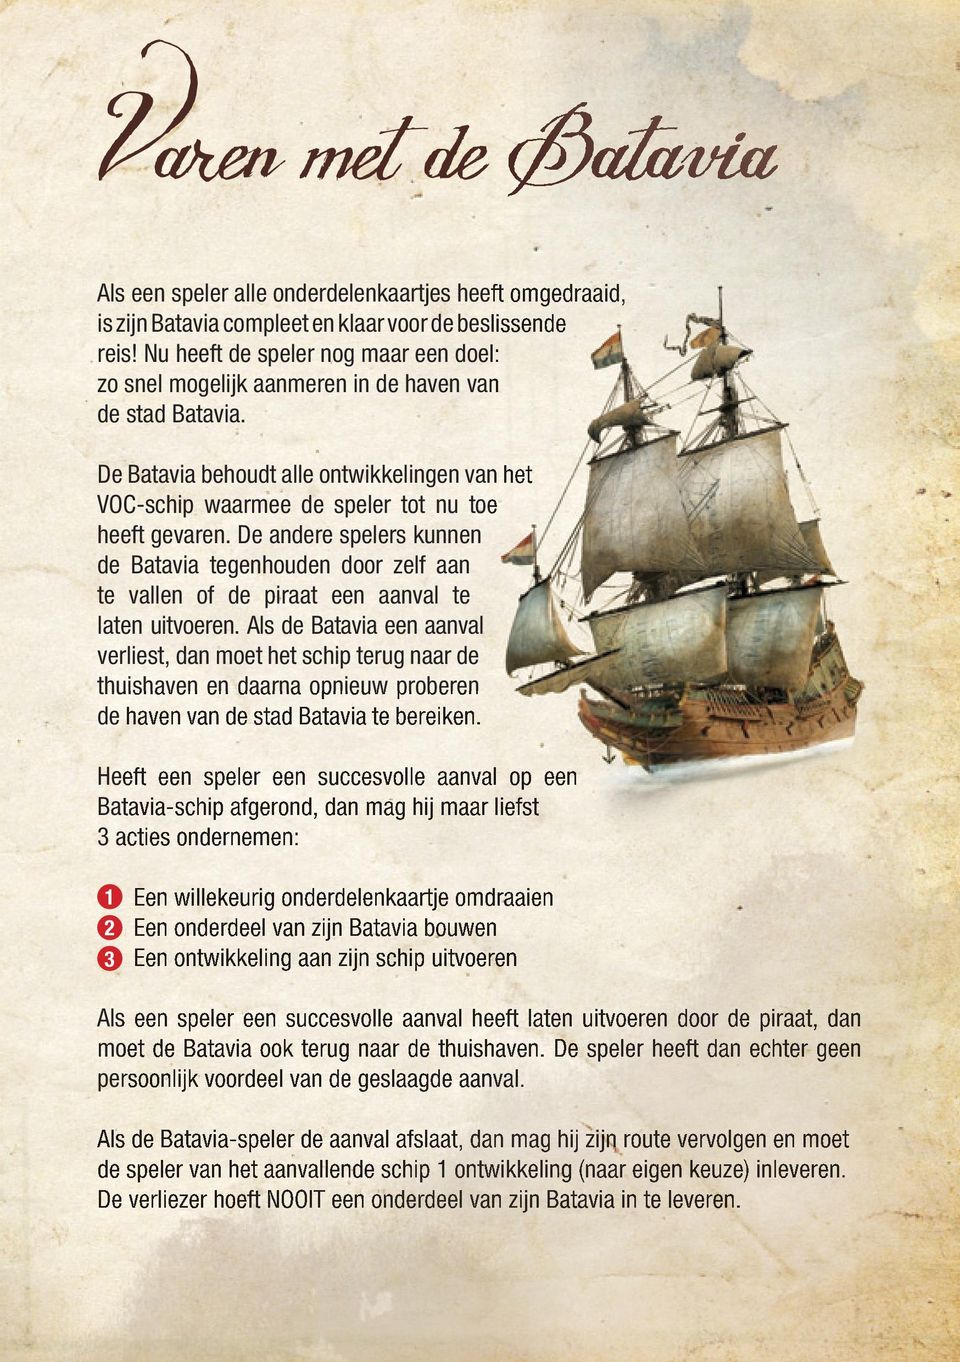 De andere spelers kunnen de Batavia tegenhouden door zelf aan te vallen of de piraat een aanval te laten uitvoeren.